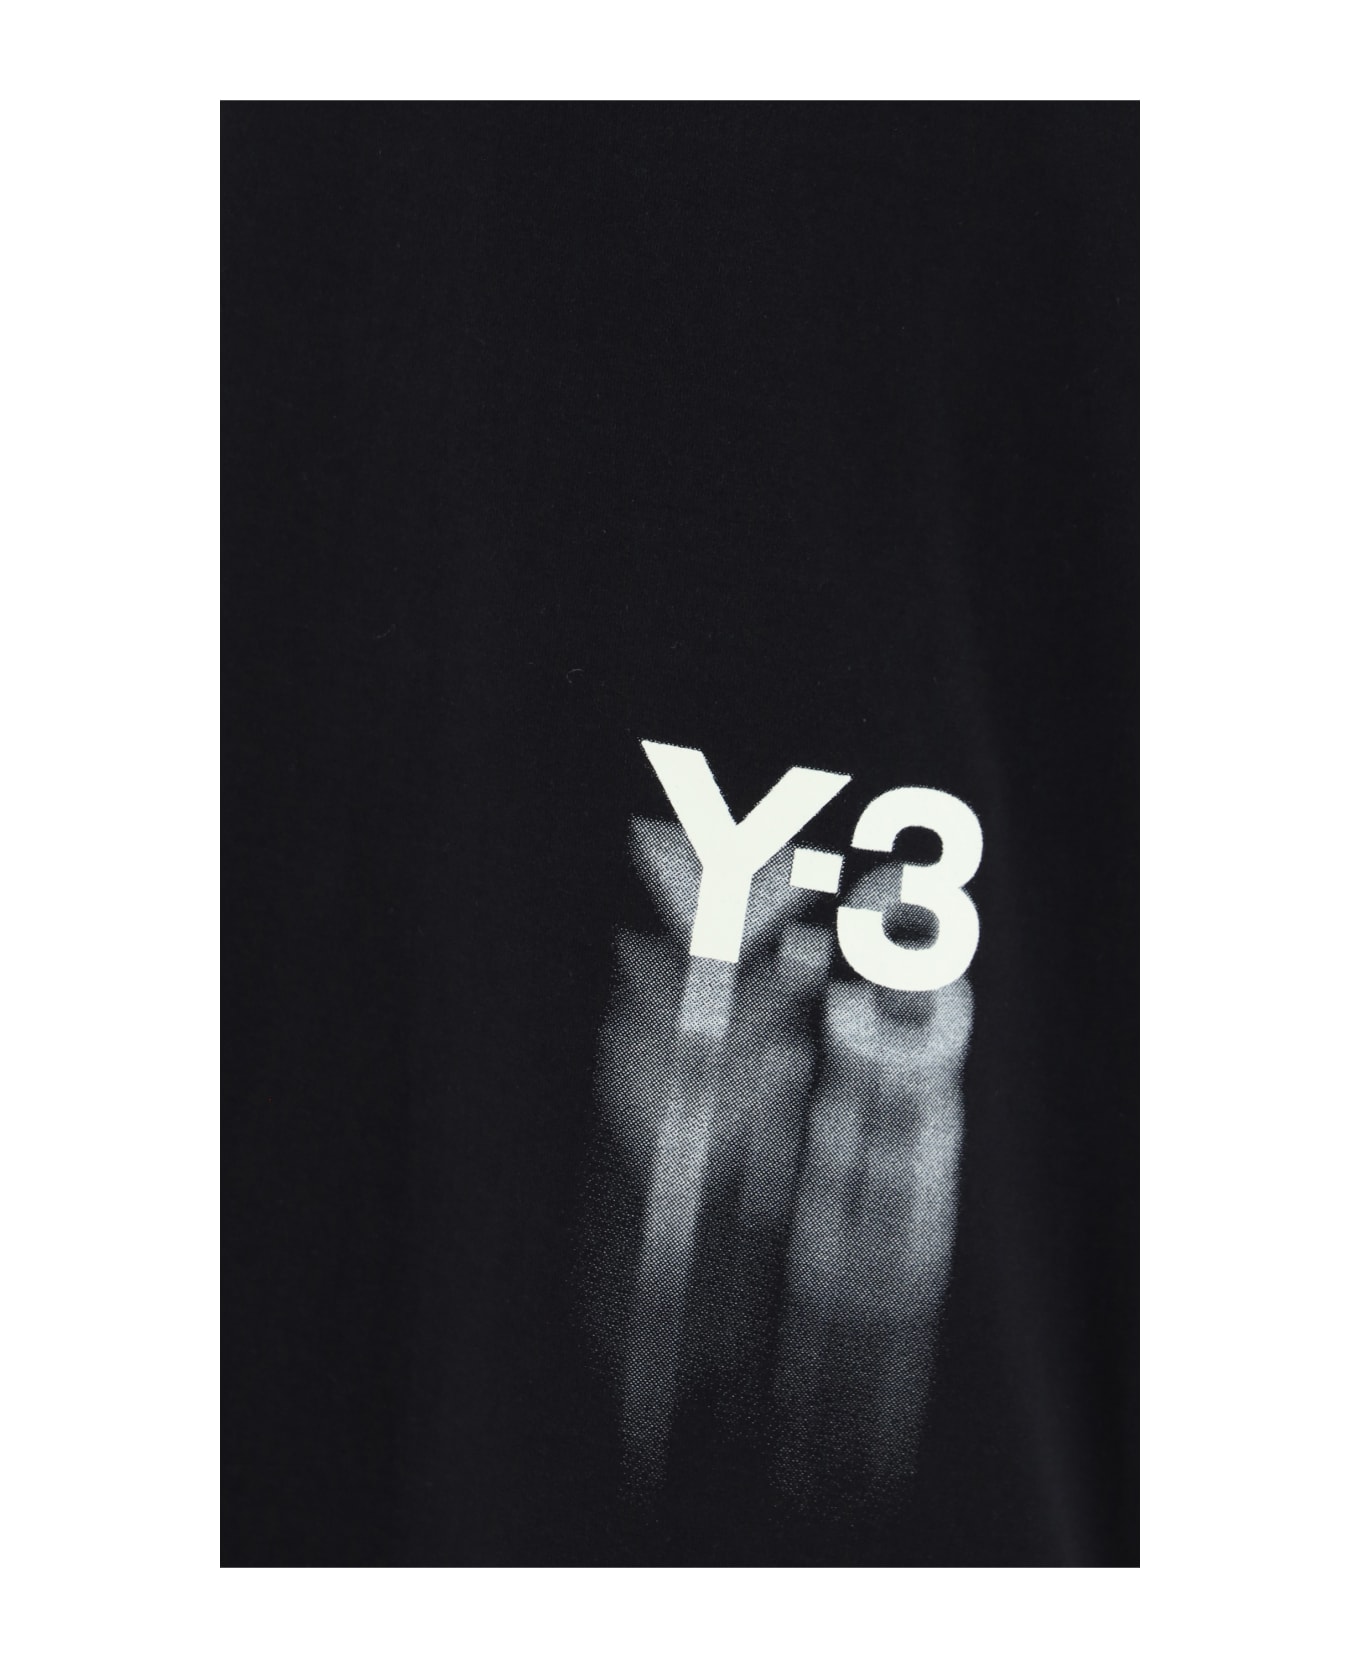 Y-3 T-shirt